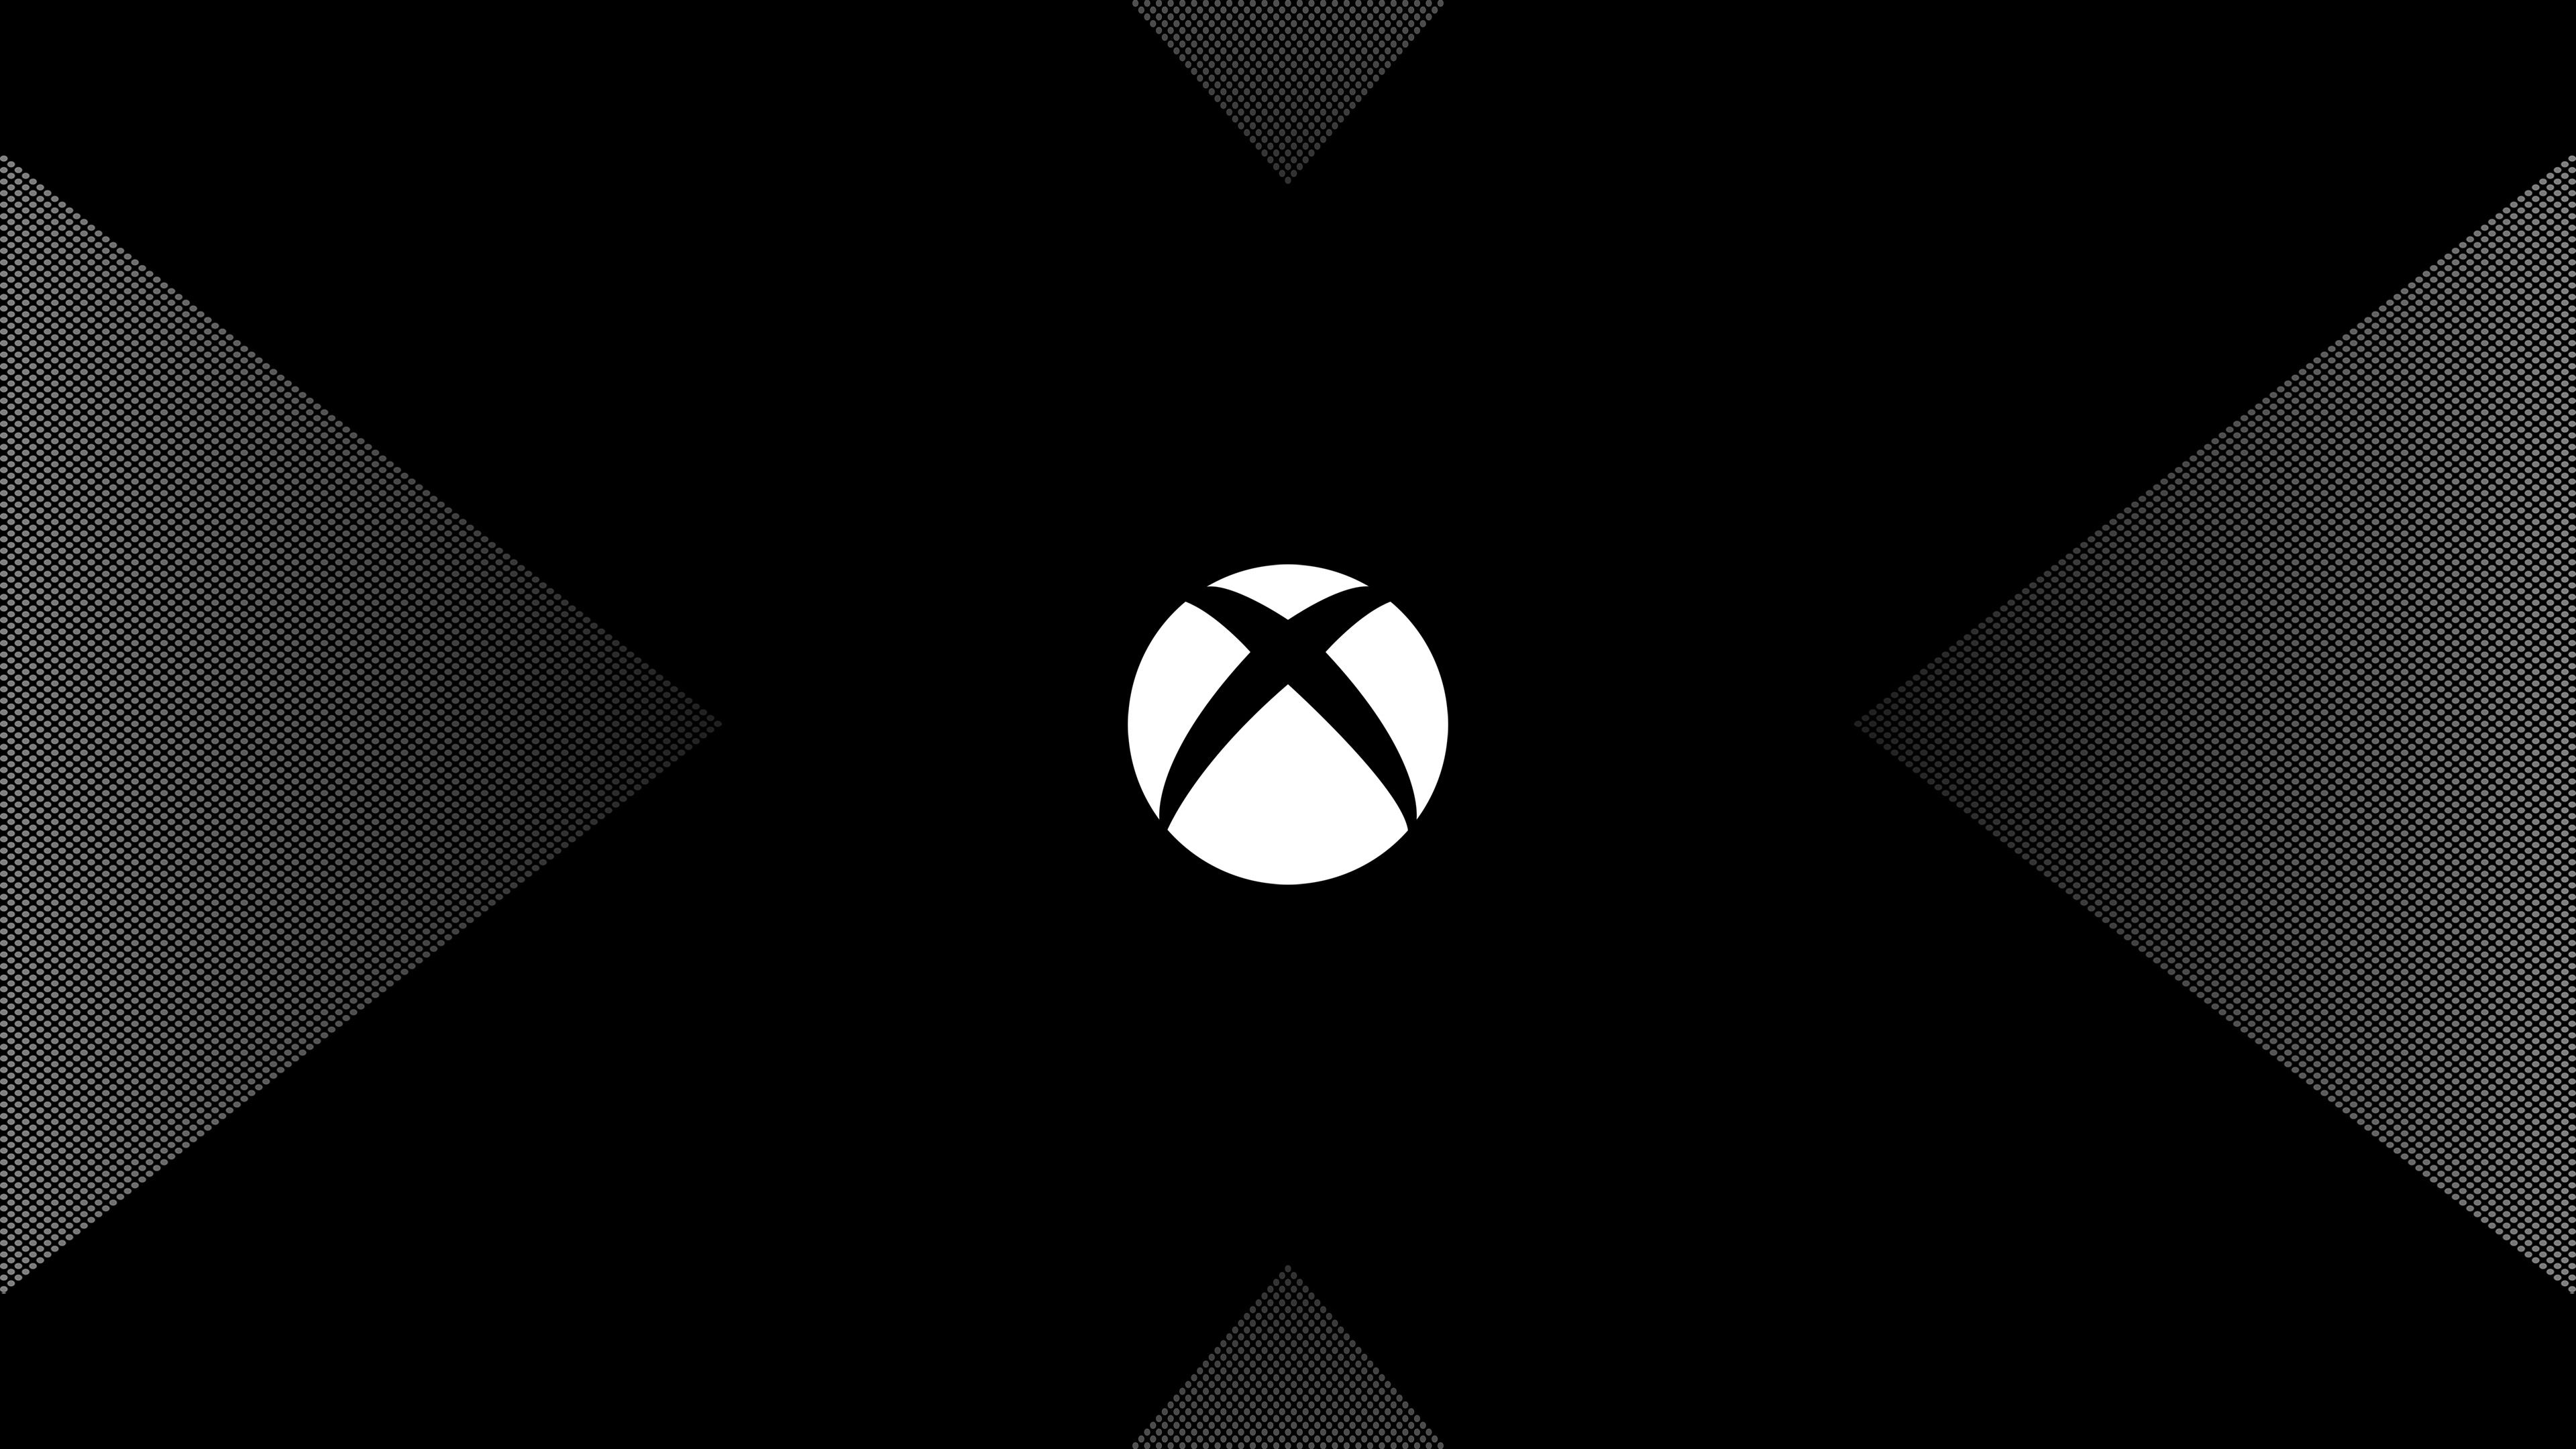 Bạn đam mê các trò chơi Xbox và muốn trải nghiệm một cách chân thật nhất? Hình nền di động Xbox sẽ giúp bạn này. Với những hình ảnh sống động và độc đáo, bạn sẽ được trải nghiệm những cảm xúc thật sự khi chơi game Xbox trên điện thoại của bạn. Tải ngay hình nền di động Xbox để có được trải nghiệm tuyệt vời trong game.